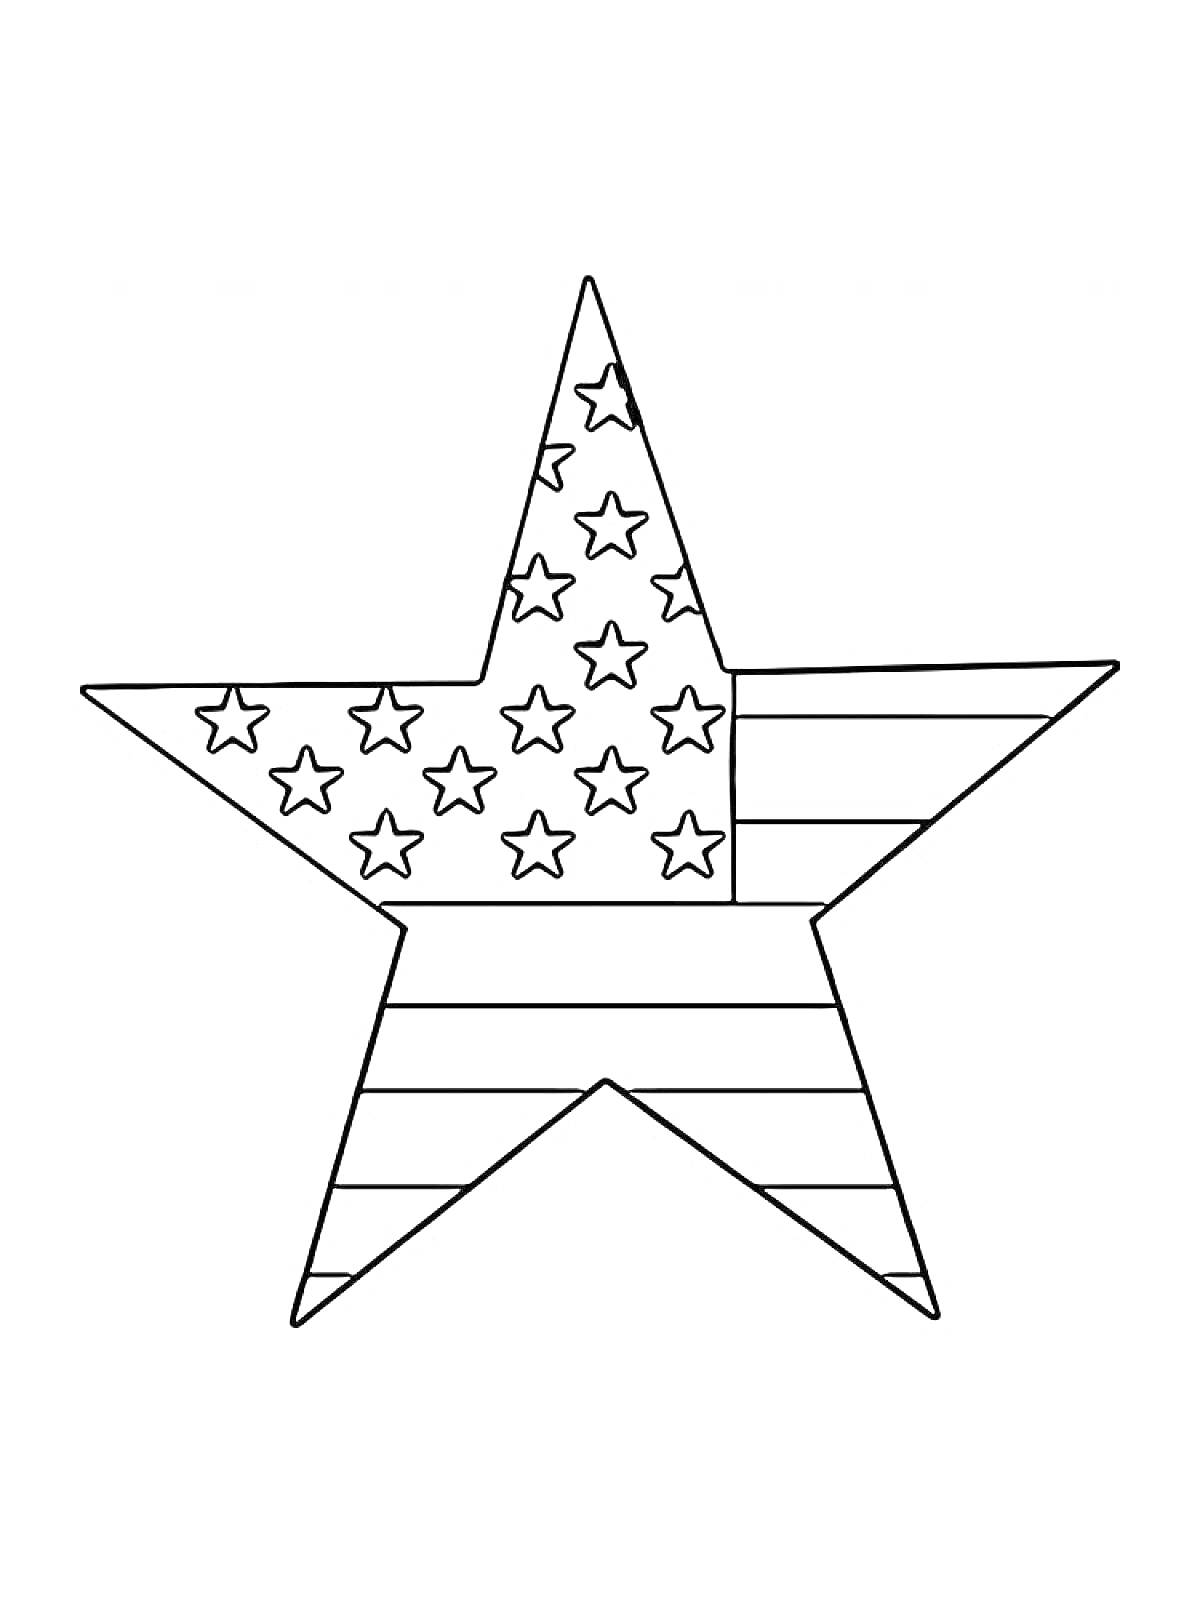 Раскраска Звезда с полосами и маленькими звездами внутри